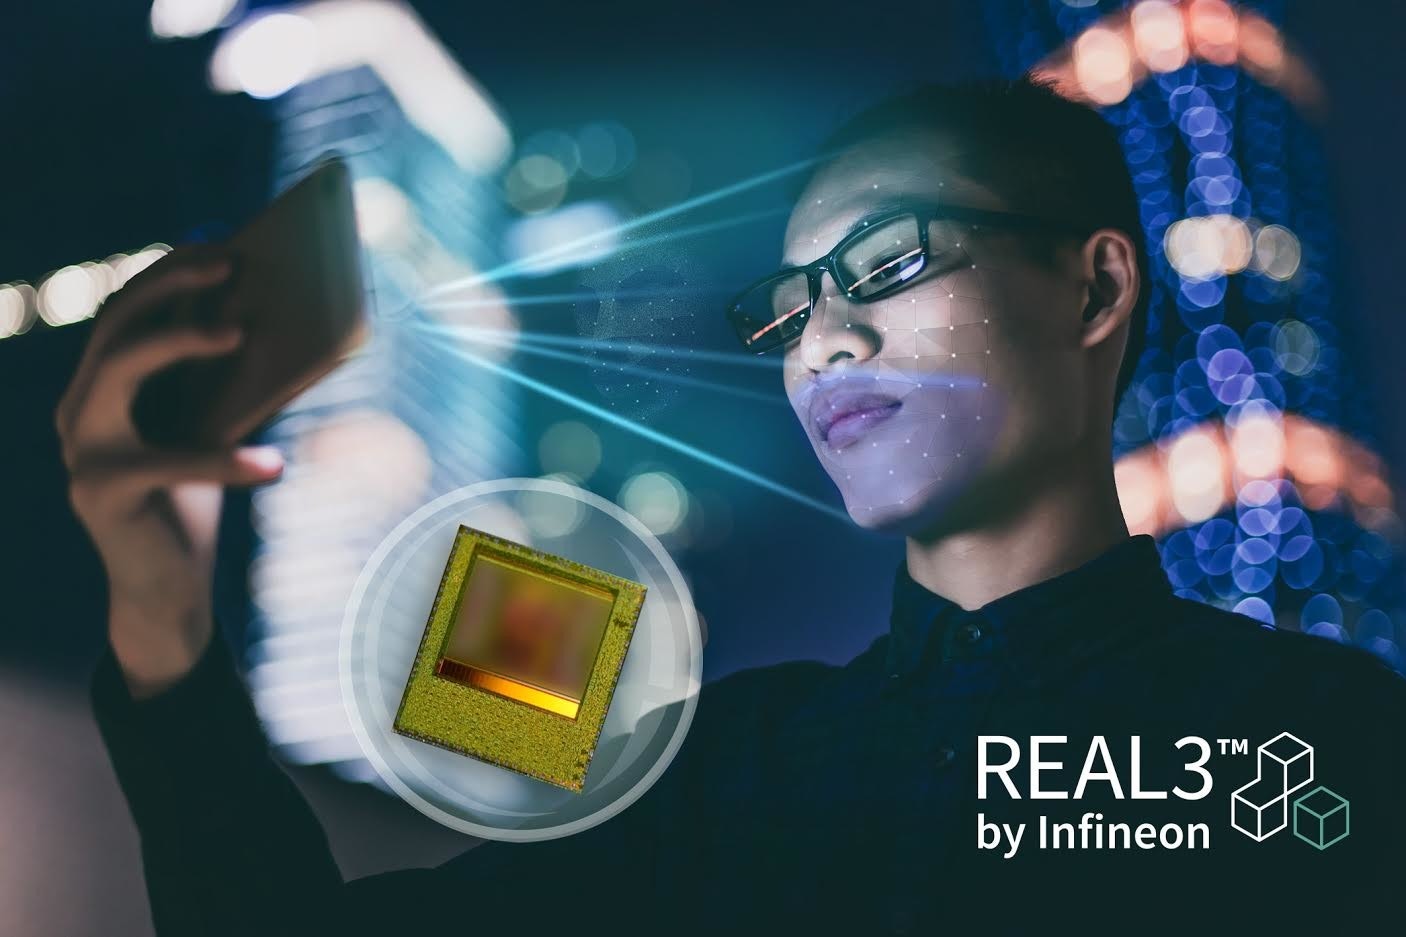 照片中提到了REAL3"、TM、by Infineon，包含了安全的面部識別、面部識別系統、生物識別、安全、人臉編號